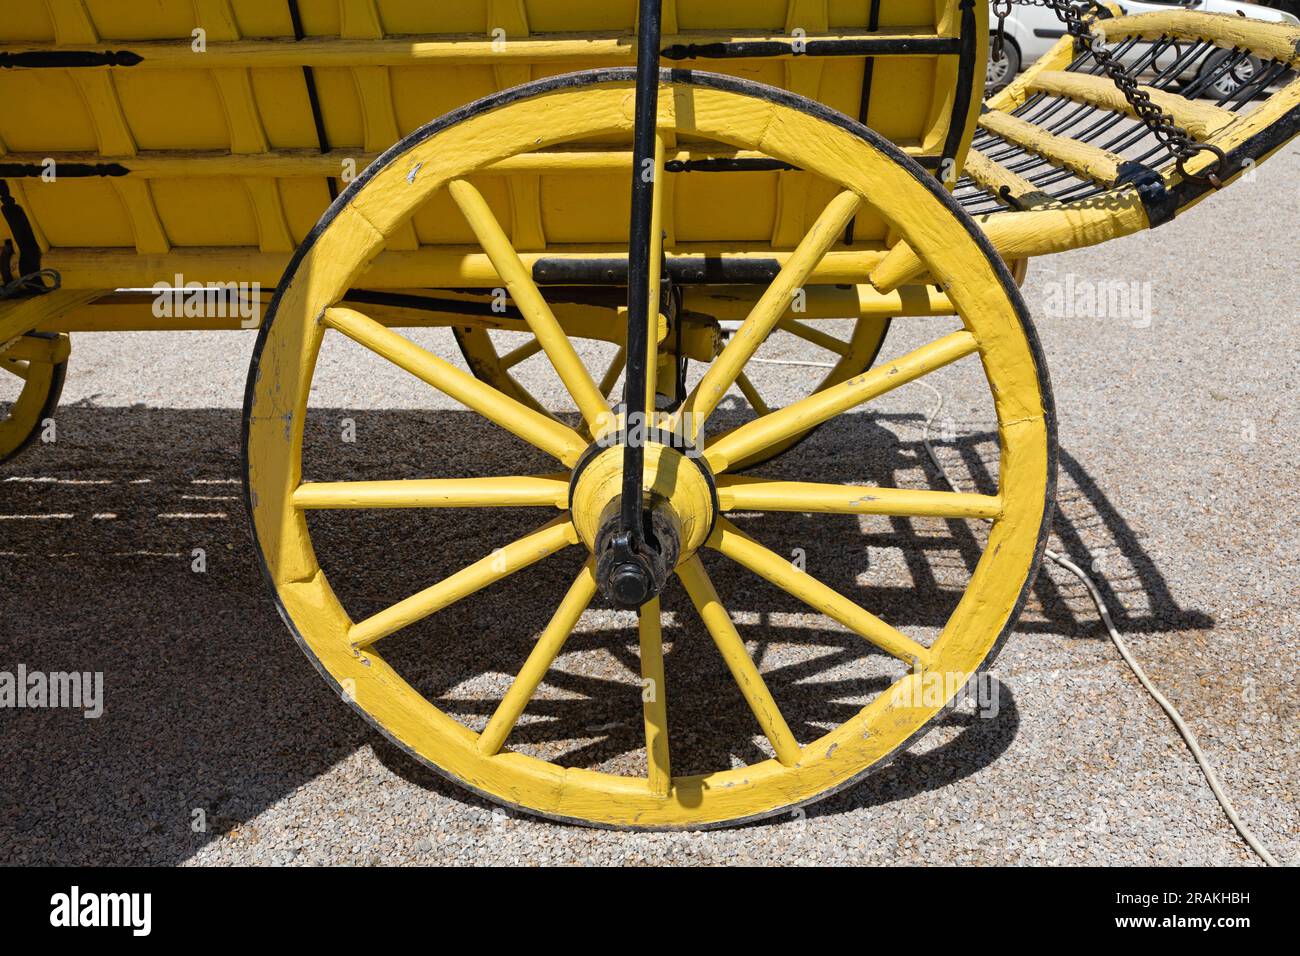 Vagone in legno giallo ruota in legno veicolo da trasporto vecchio Foto Stock